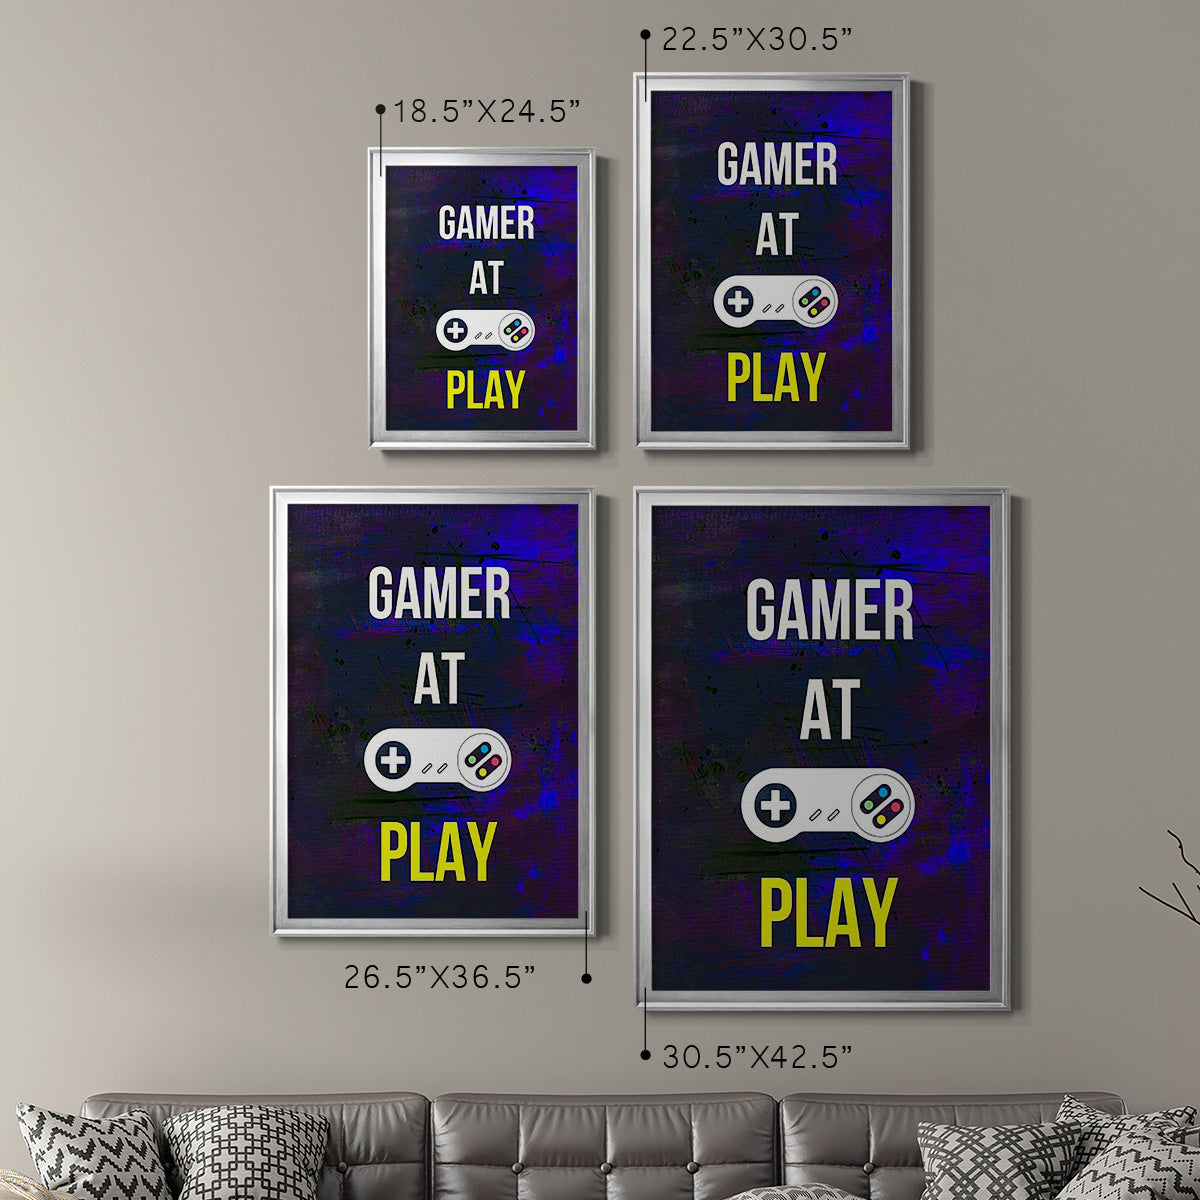 Gamer at Play VI Premium Framed Print - Ready to Hang